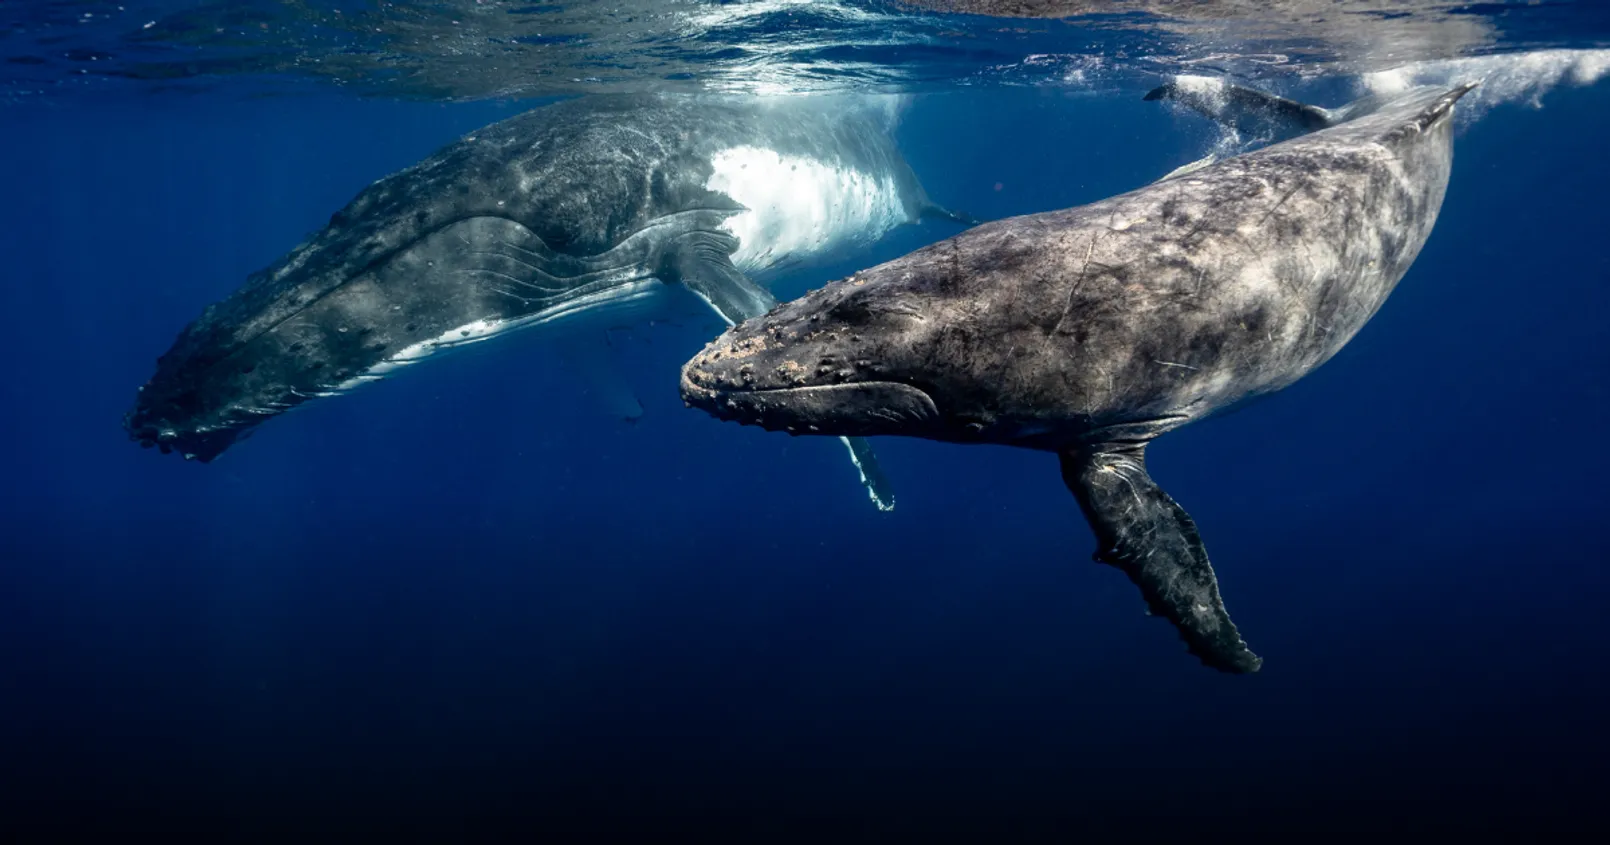 ‘วาฬหน้าใหม่’ มีความเร็วในการเข้าซื้อและการสะสม Bitcoin ที่มากกว่า ‘วาฬรุ่นเก่า’ เกือบ 2 เท่า